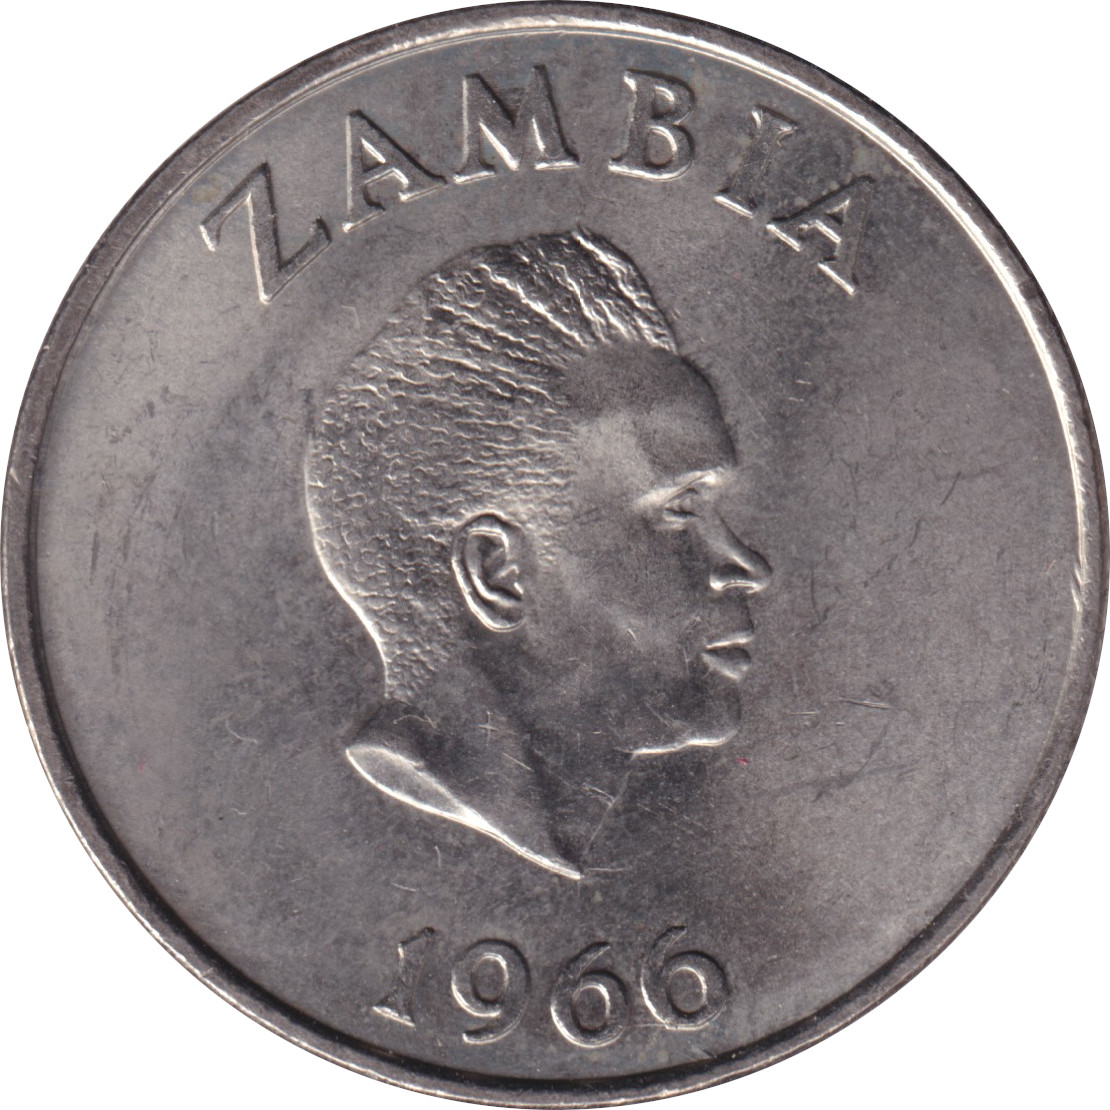 1 shilling - Kaunda